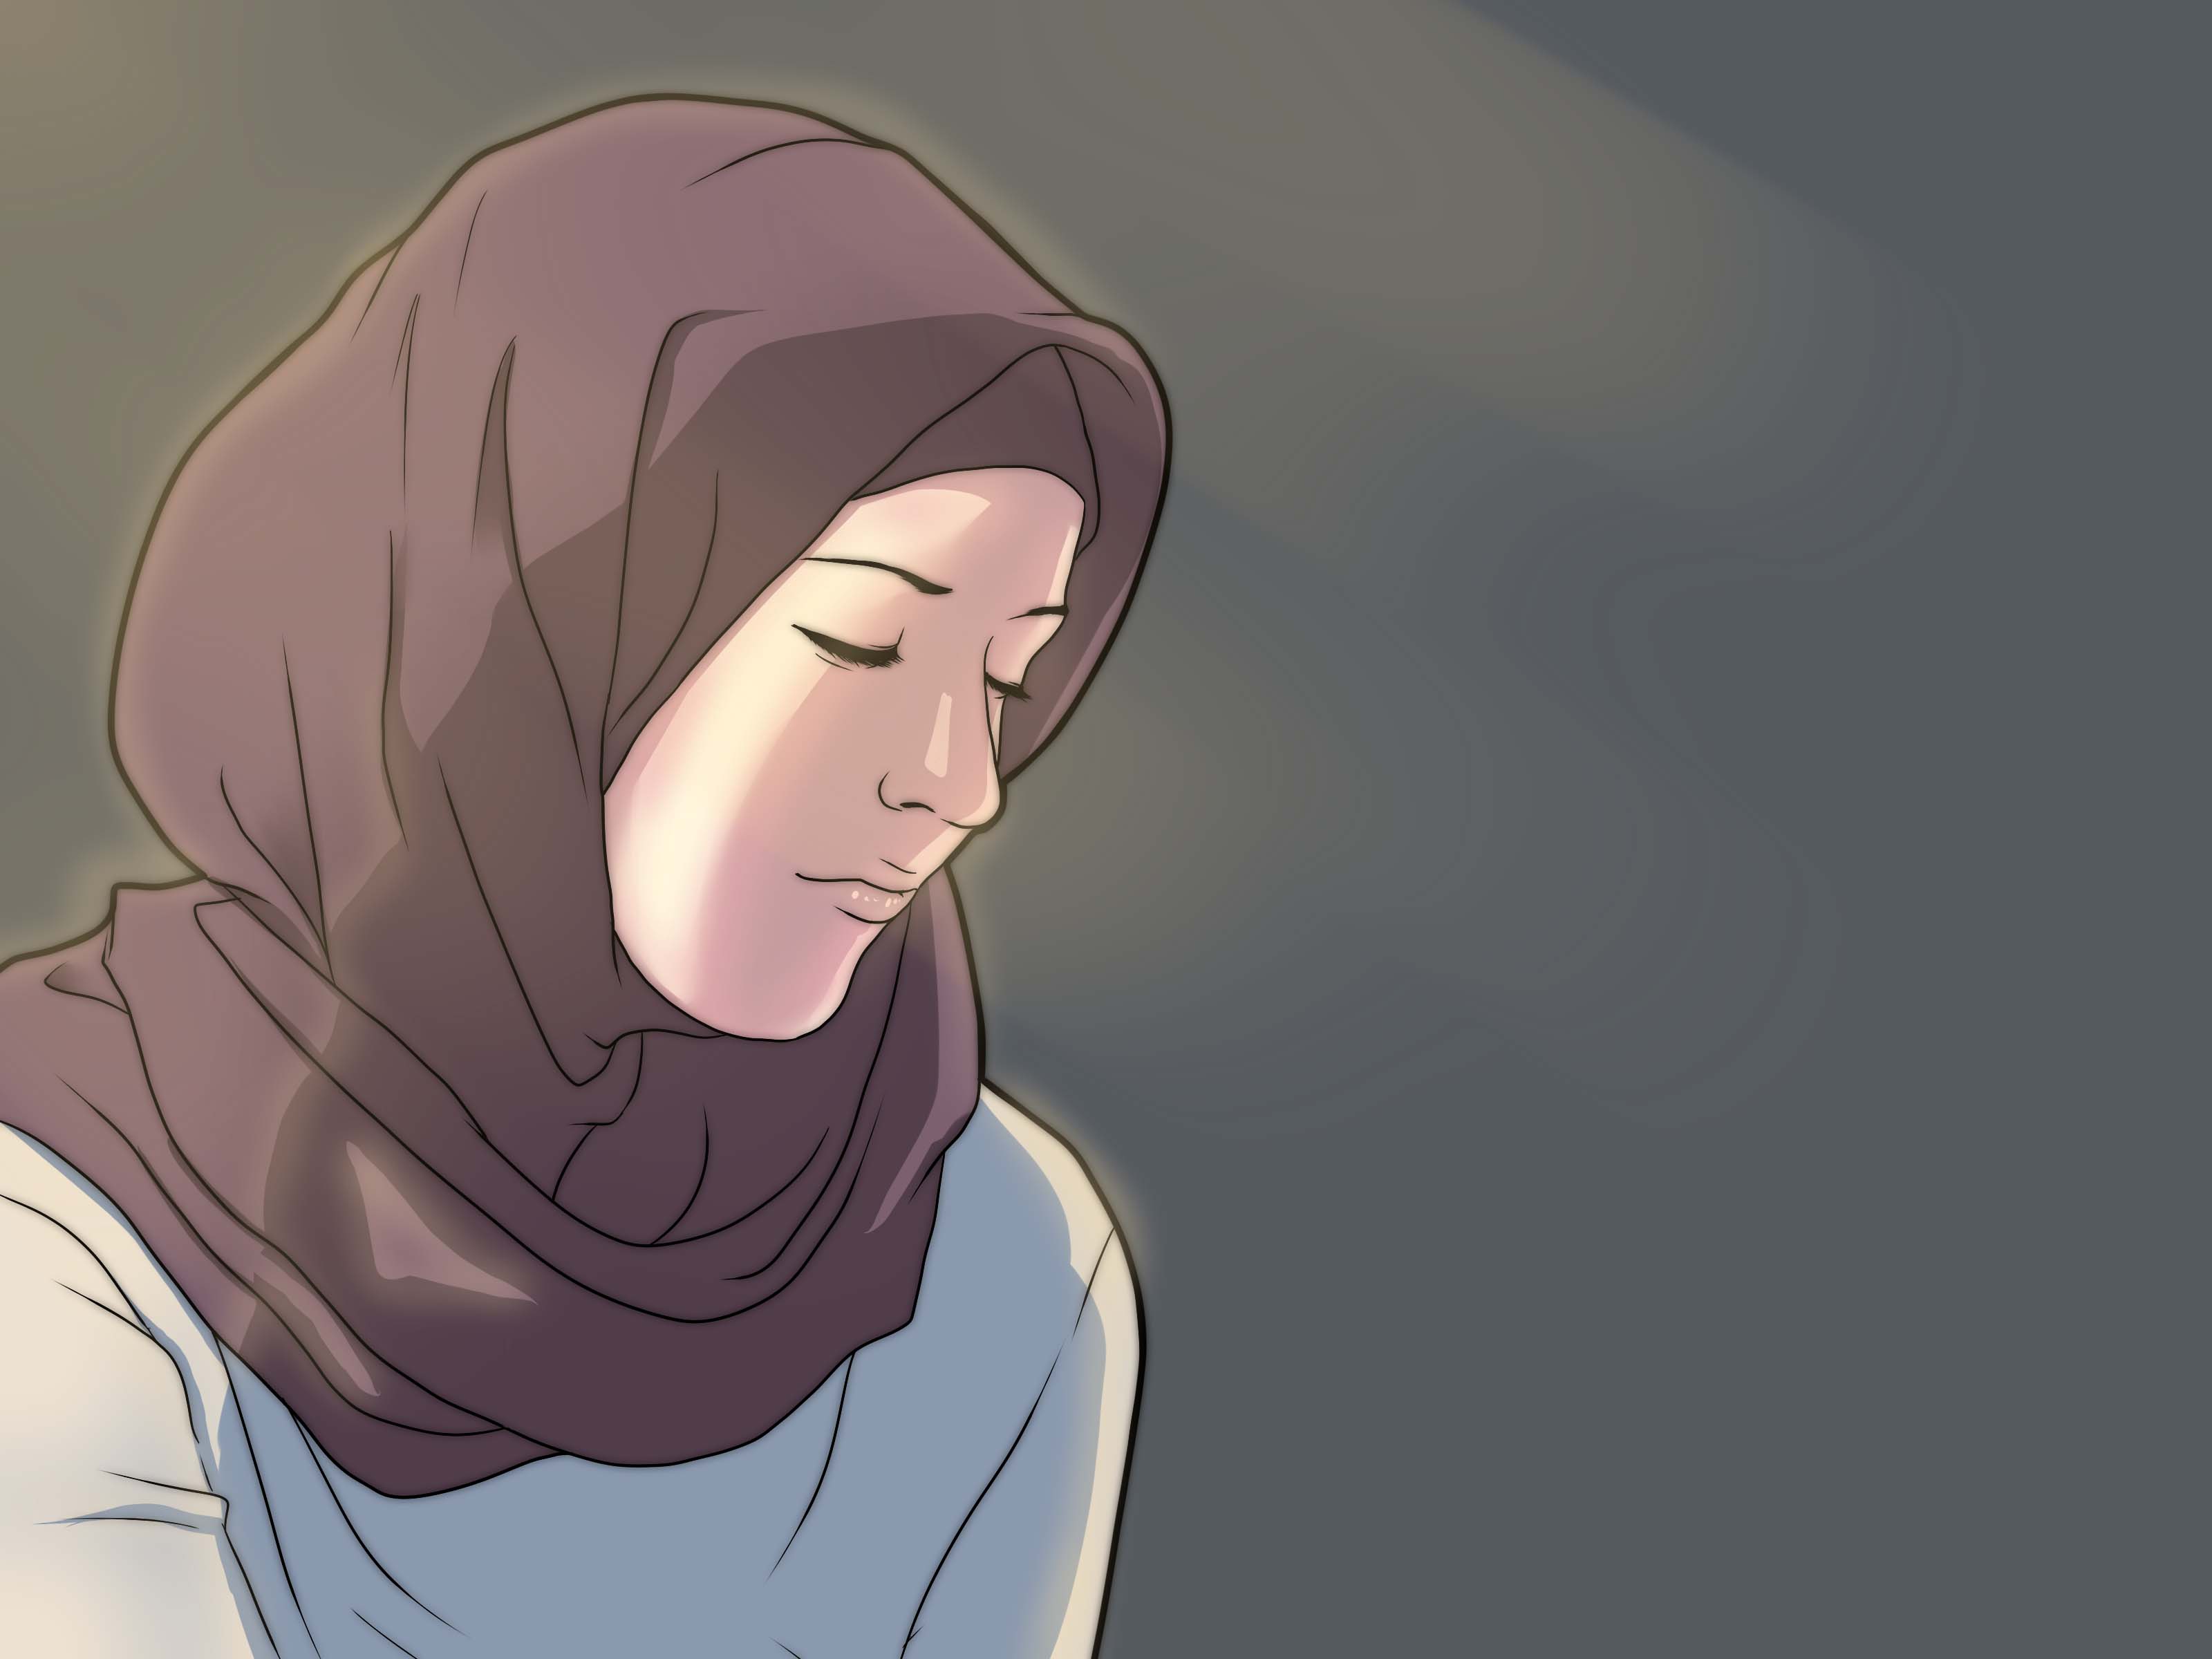 Muslim Girl Cartoon Wallpapers Top Free Muslim Girl Cartoon Backgrounds Wallpaperaccess